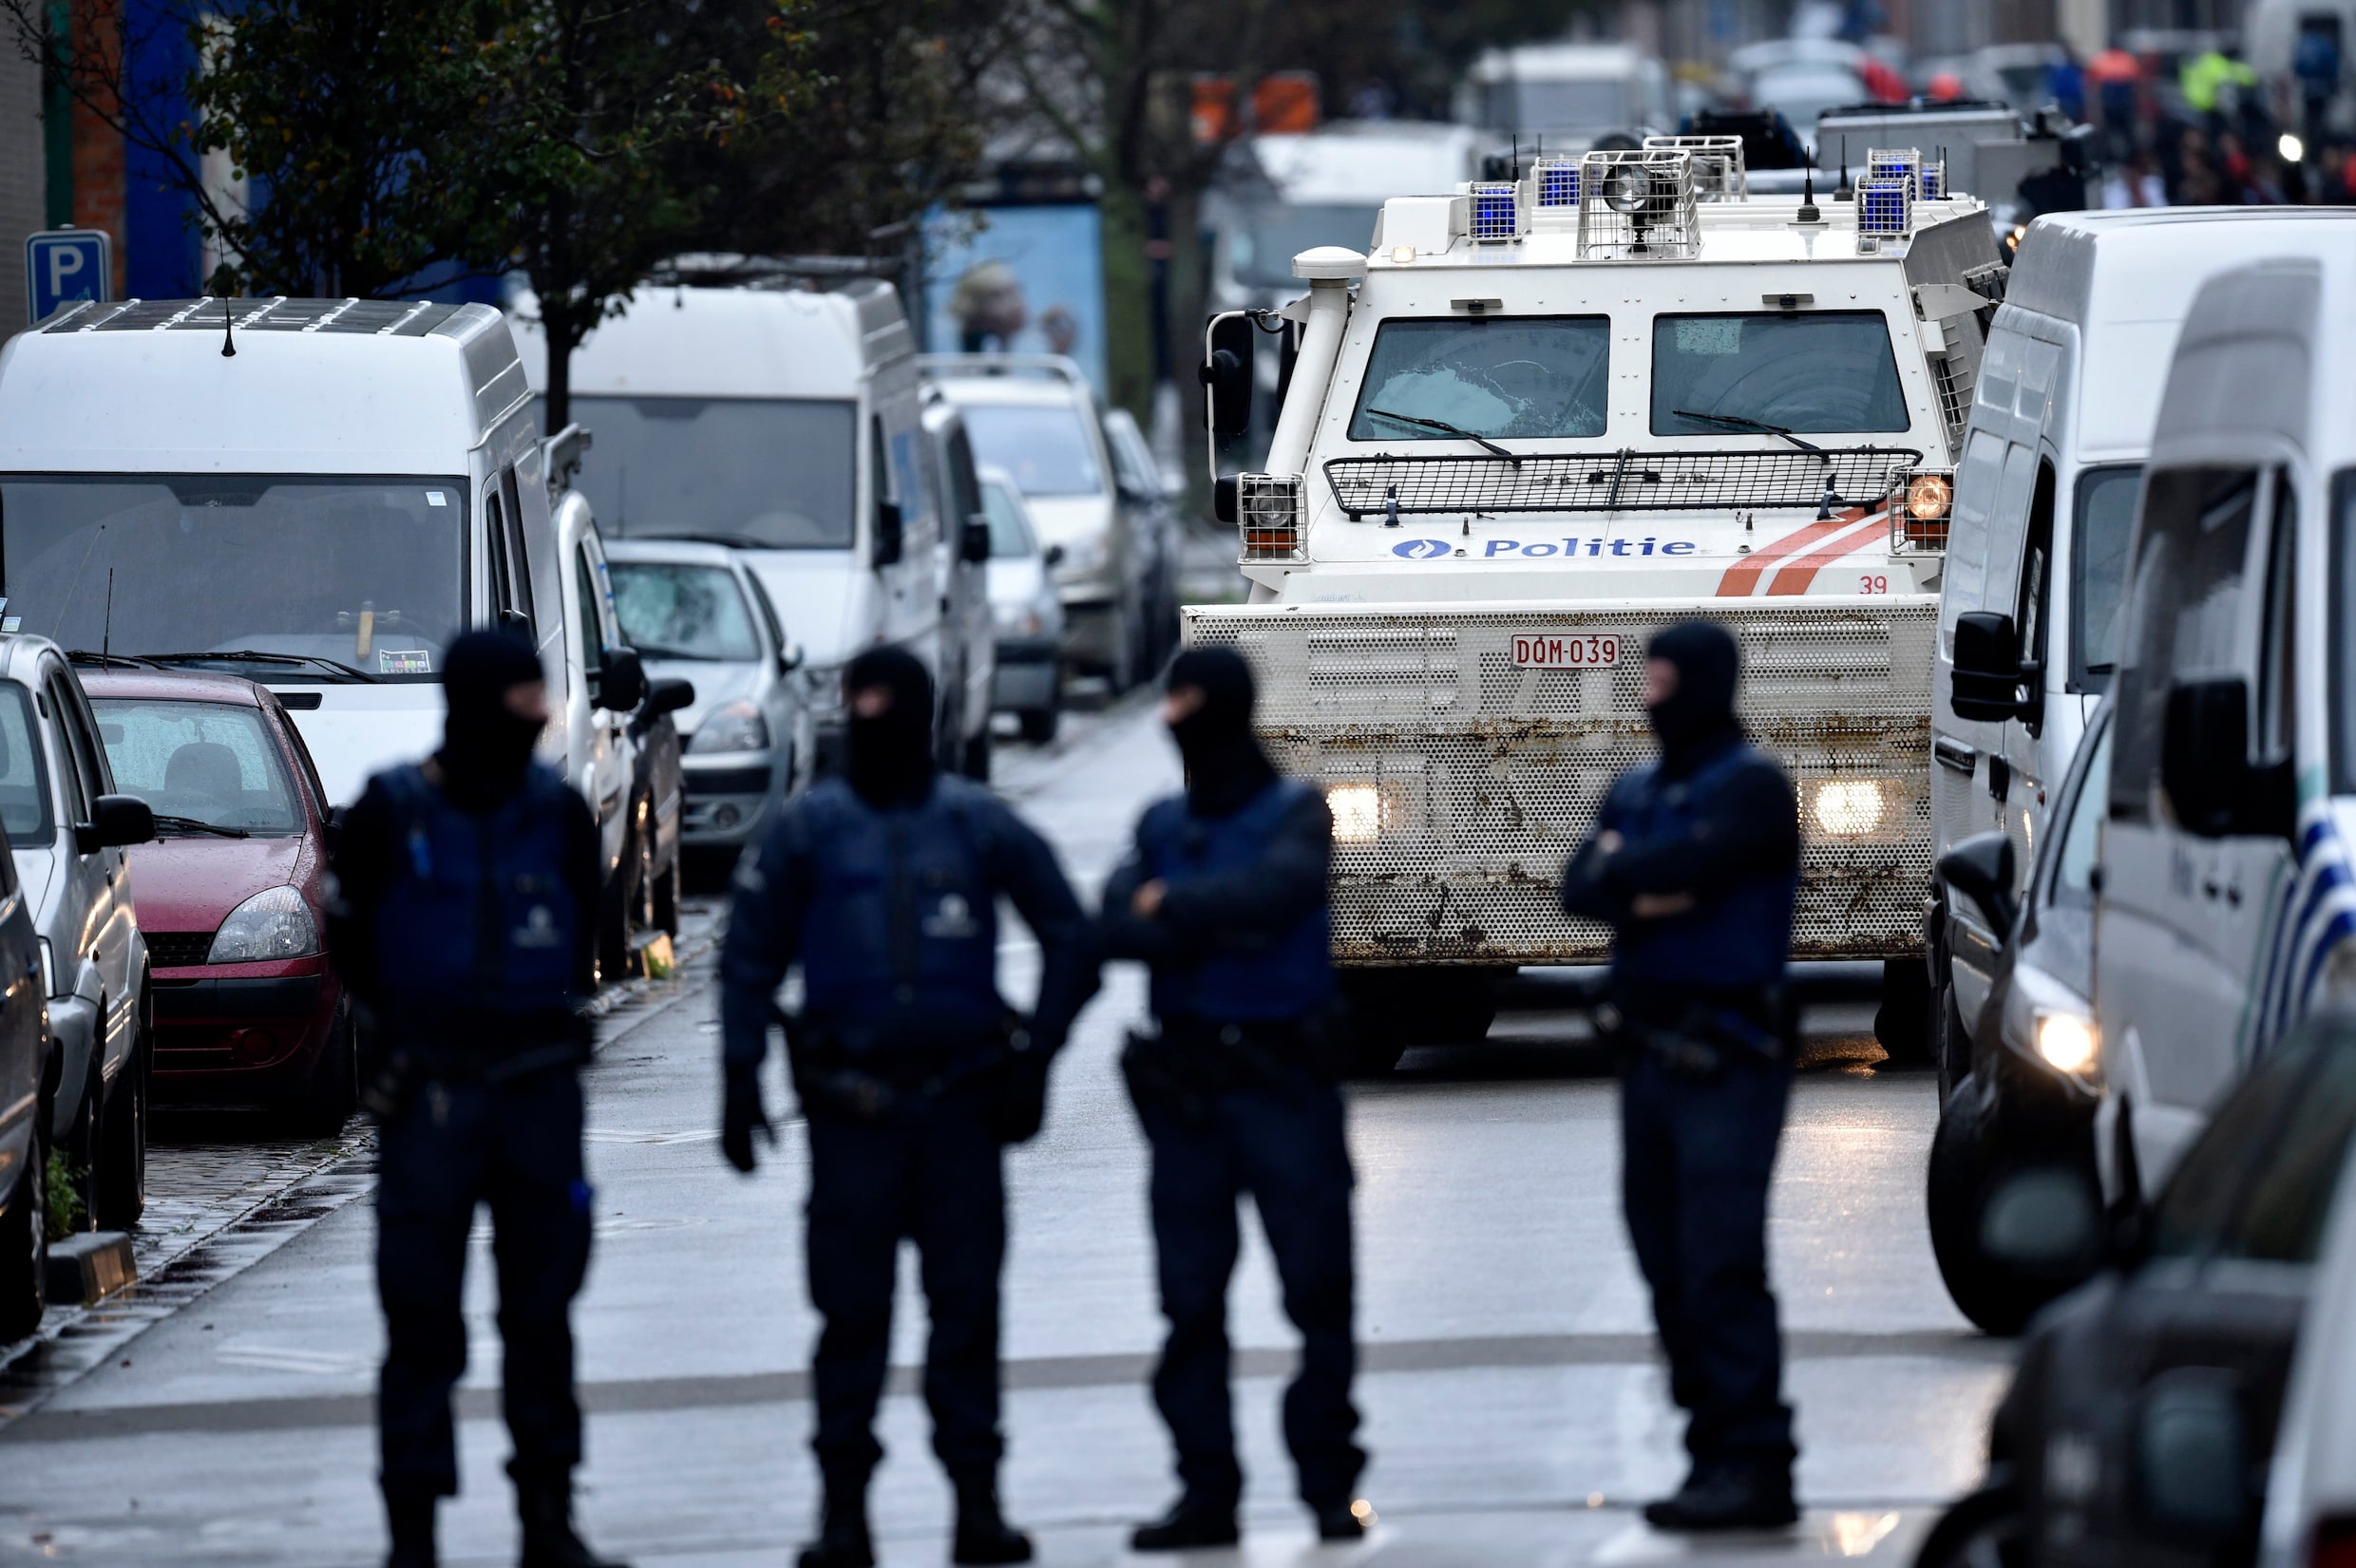 ‘Ergerlijke schertsvertoning’: Fransen ontzet over houding Belgische speurders op proces over aanslagen in Parijs